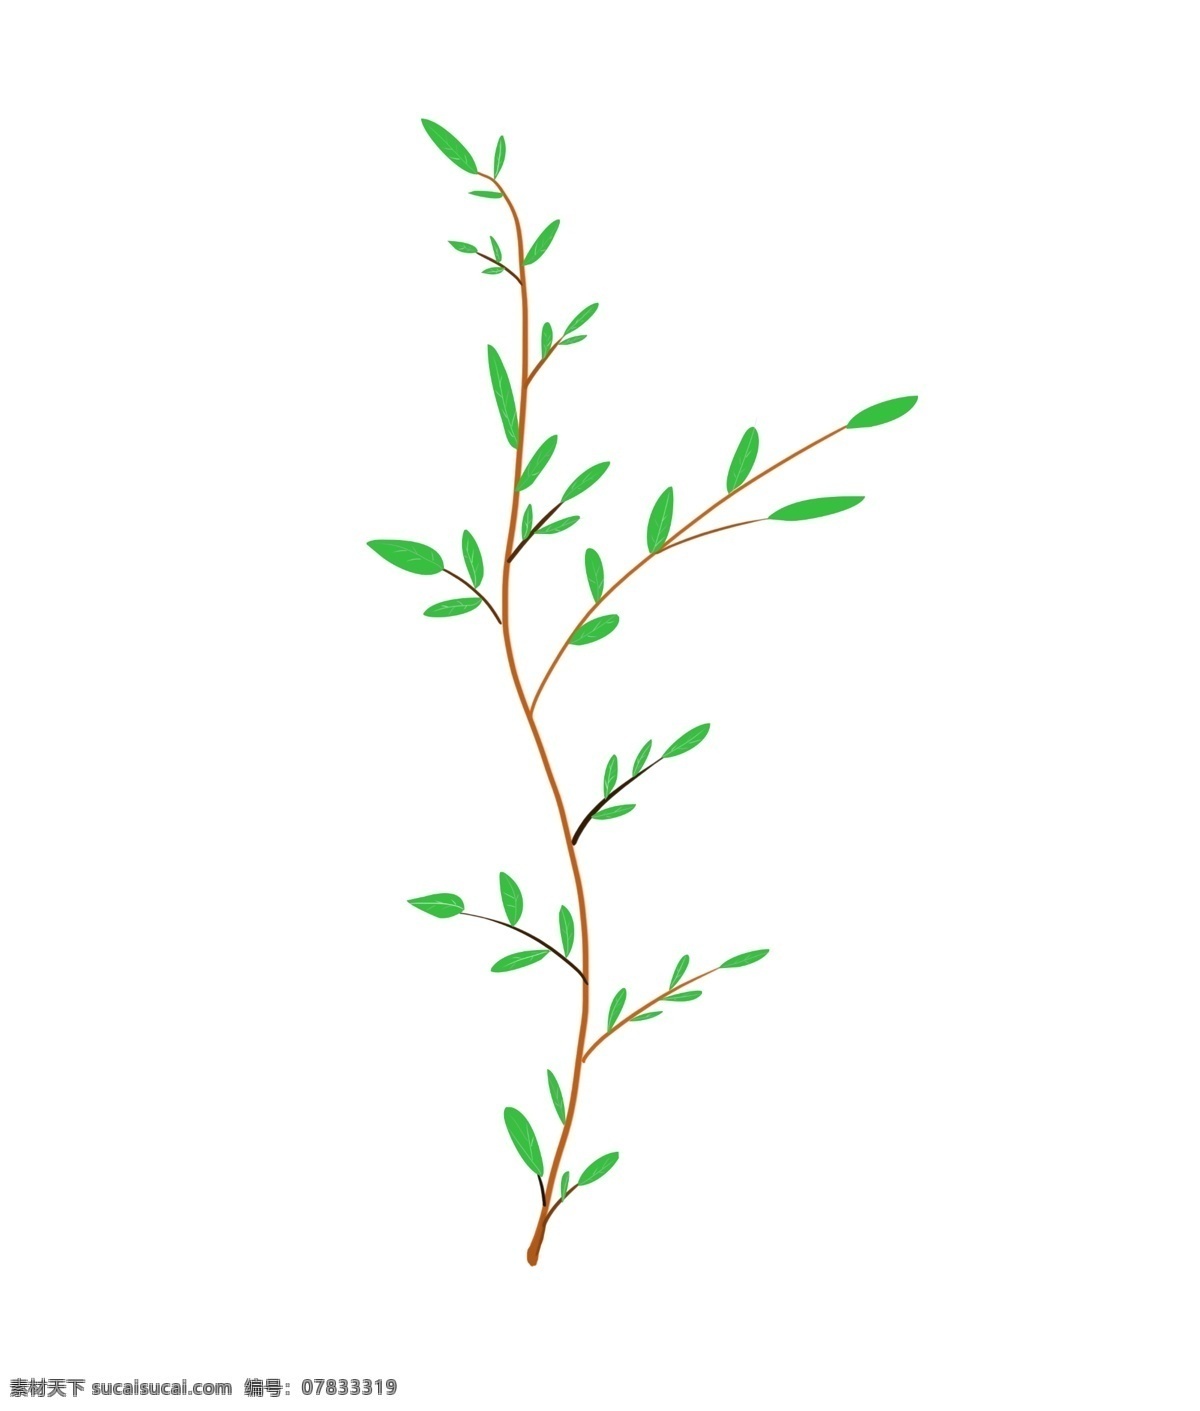 颗 小 树苗 绿叶 插画 创意树枝树叶 绿色的树叶 棕色的树枝 绿色的植物 一颗小树苗 立体树枝插画